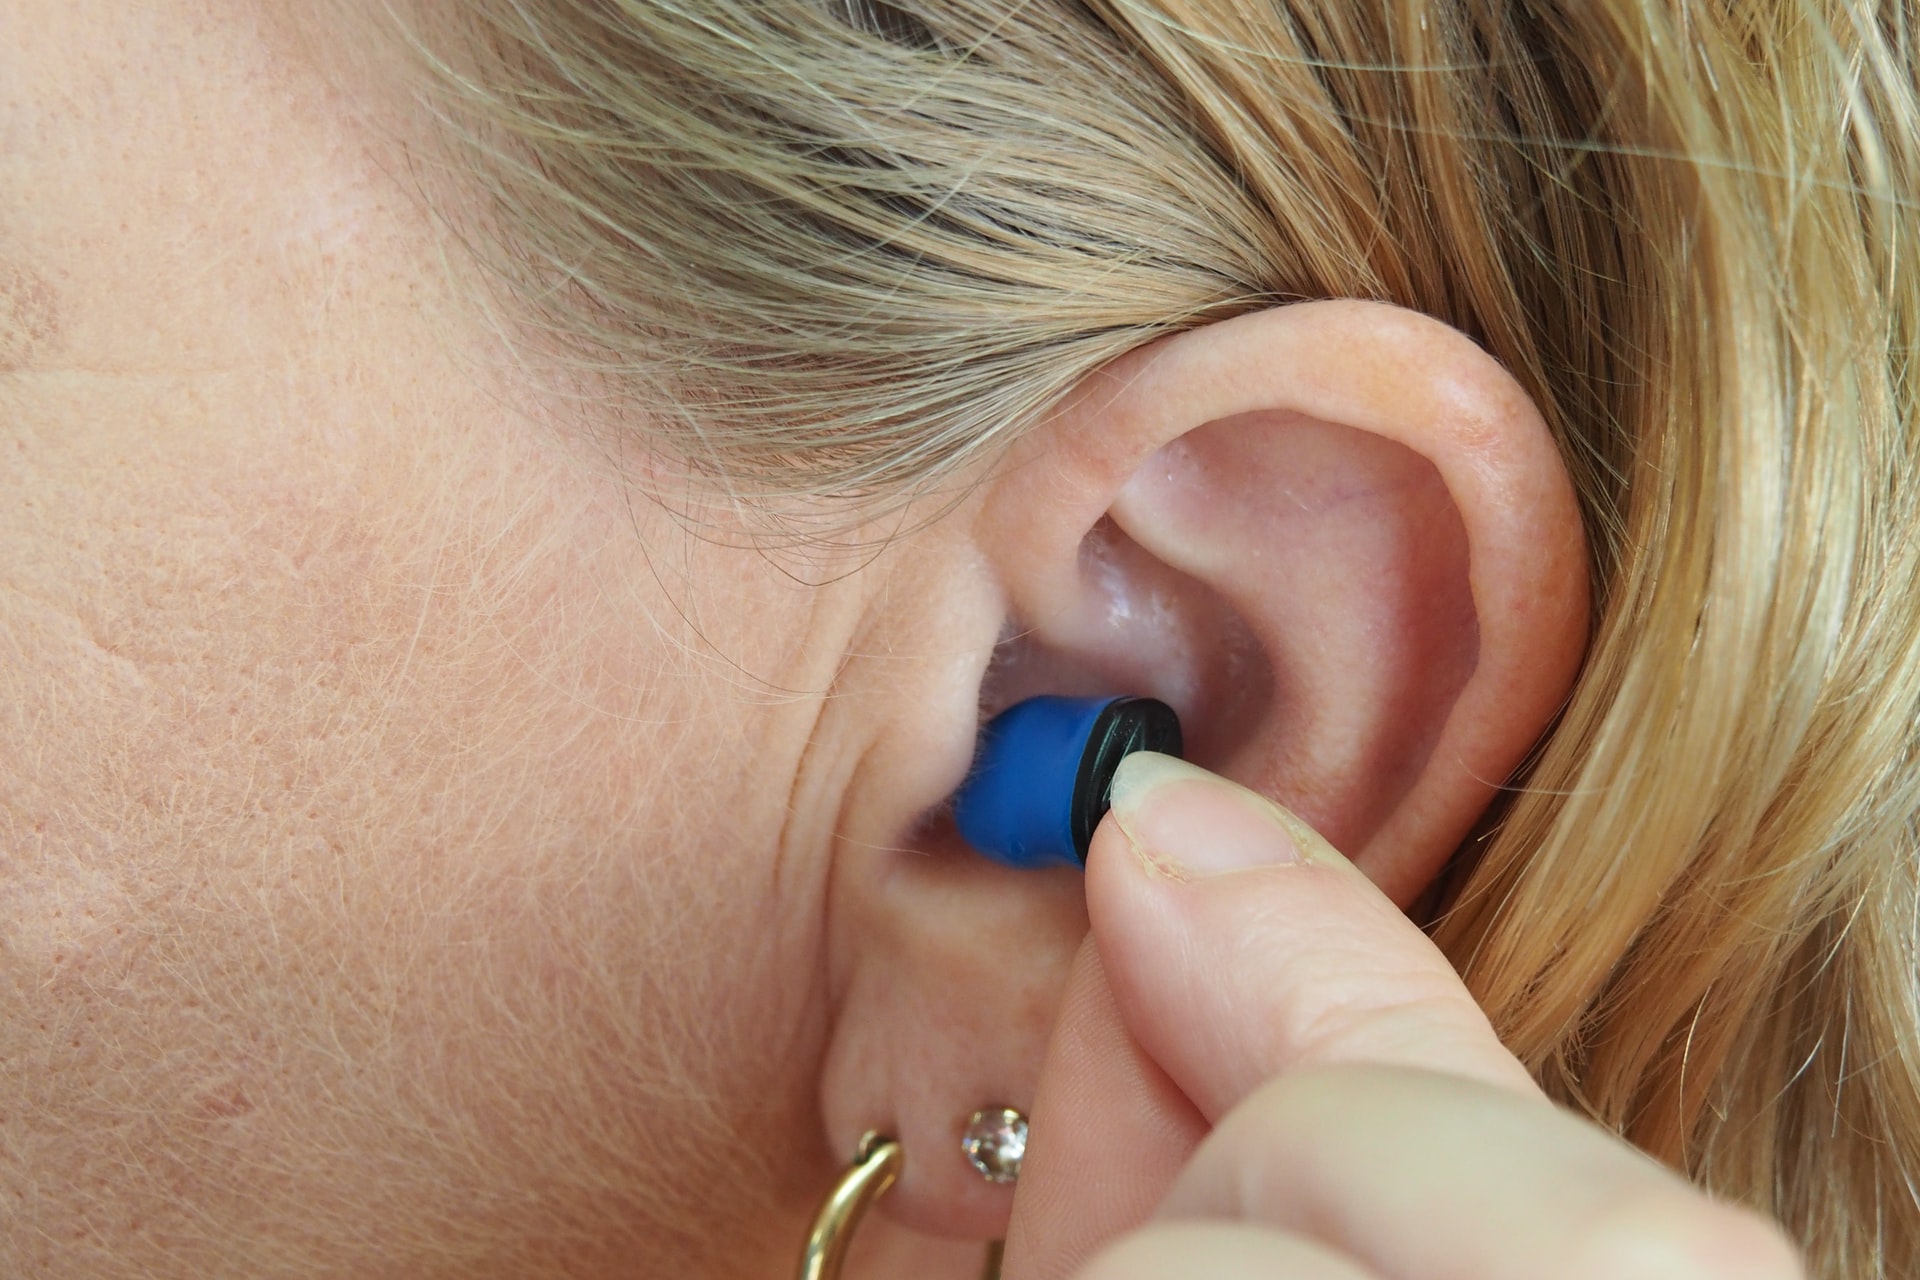 woman putting earplugs in her ears